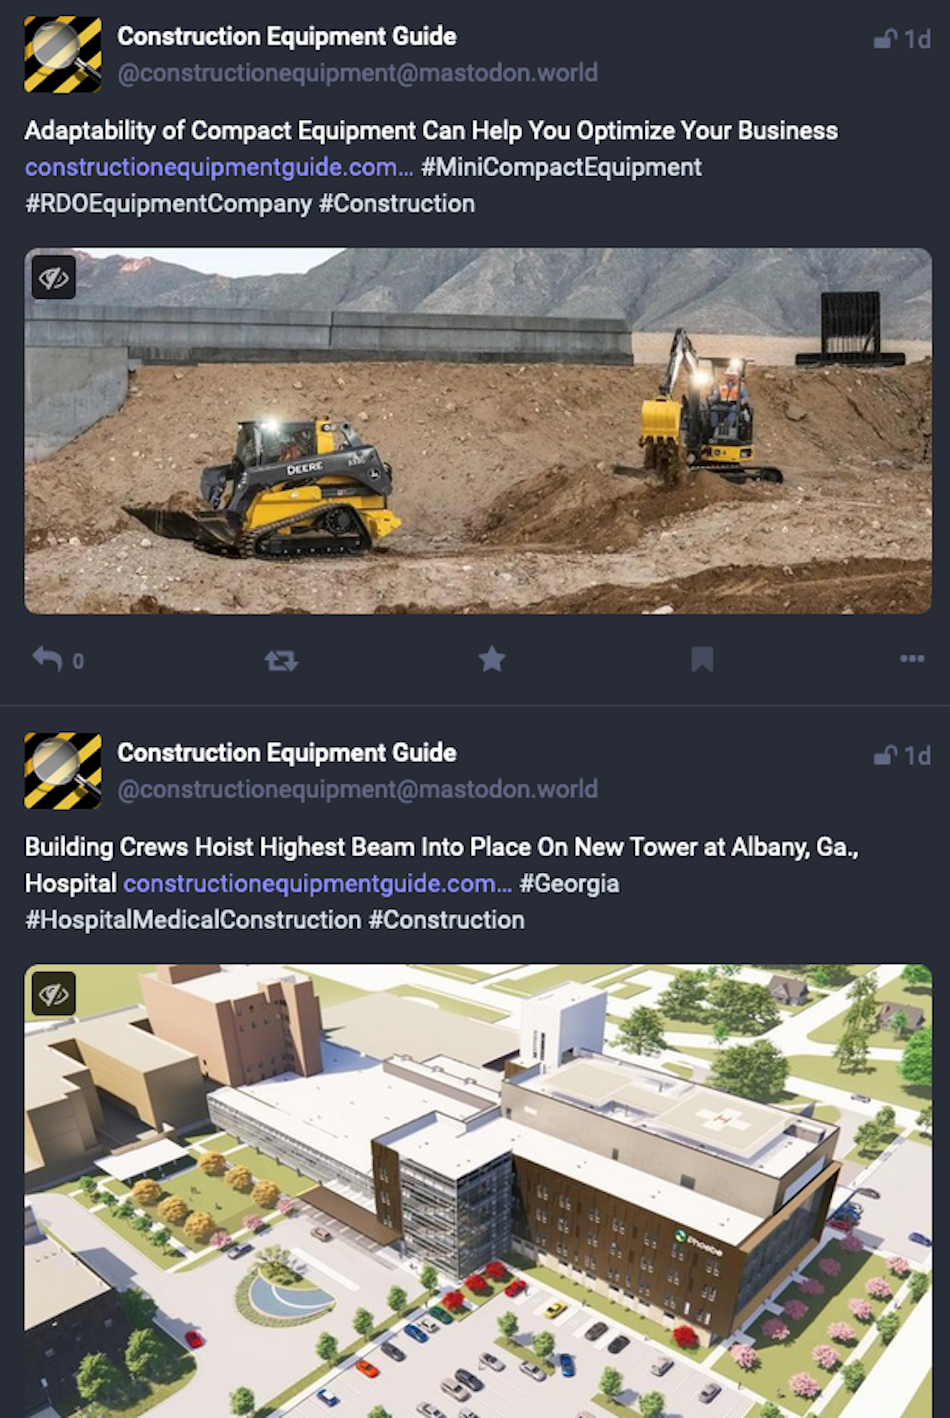 社交媒体平台 Mastodon 上的两则帖子显示行业新闻媒体《建筑设备指南》宣传其网站上的新闻报道。